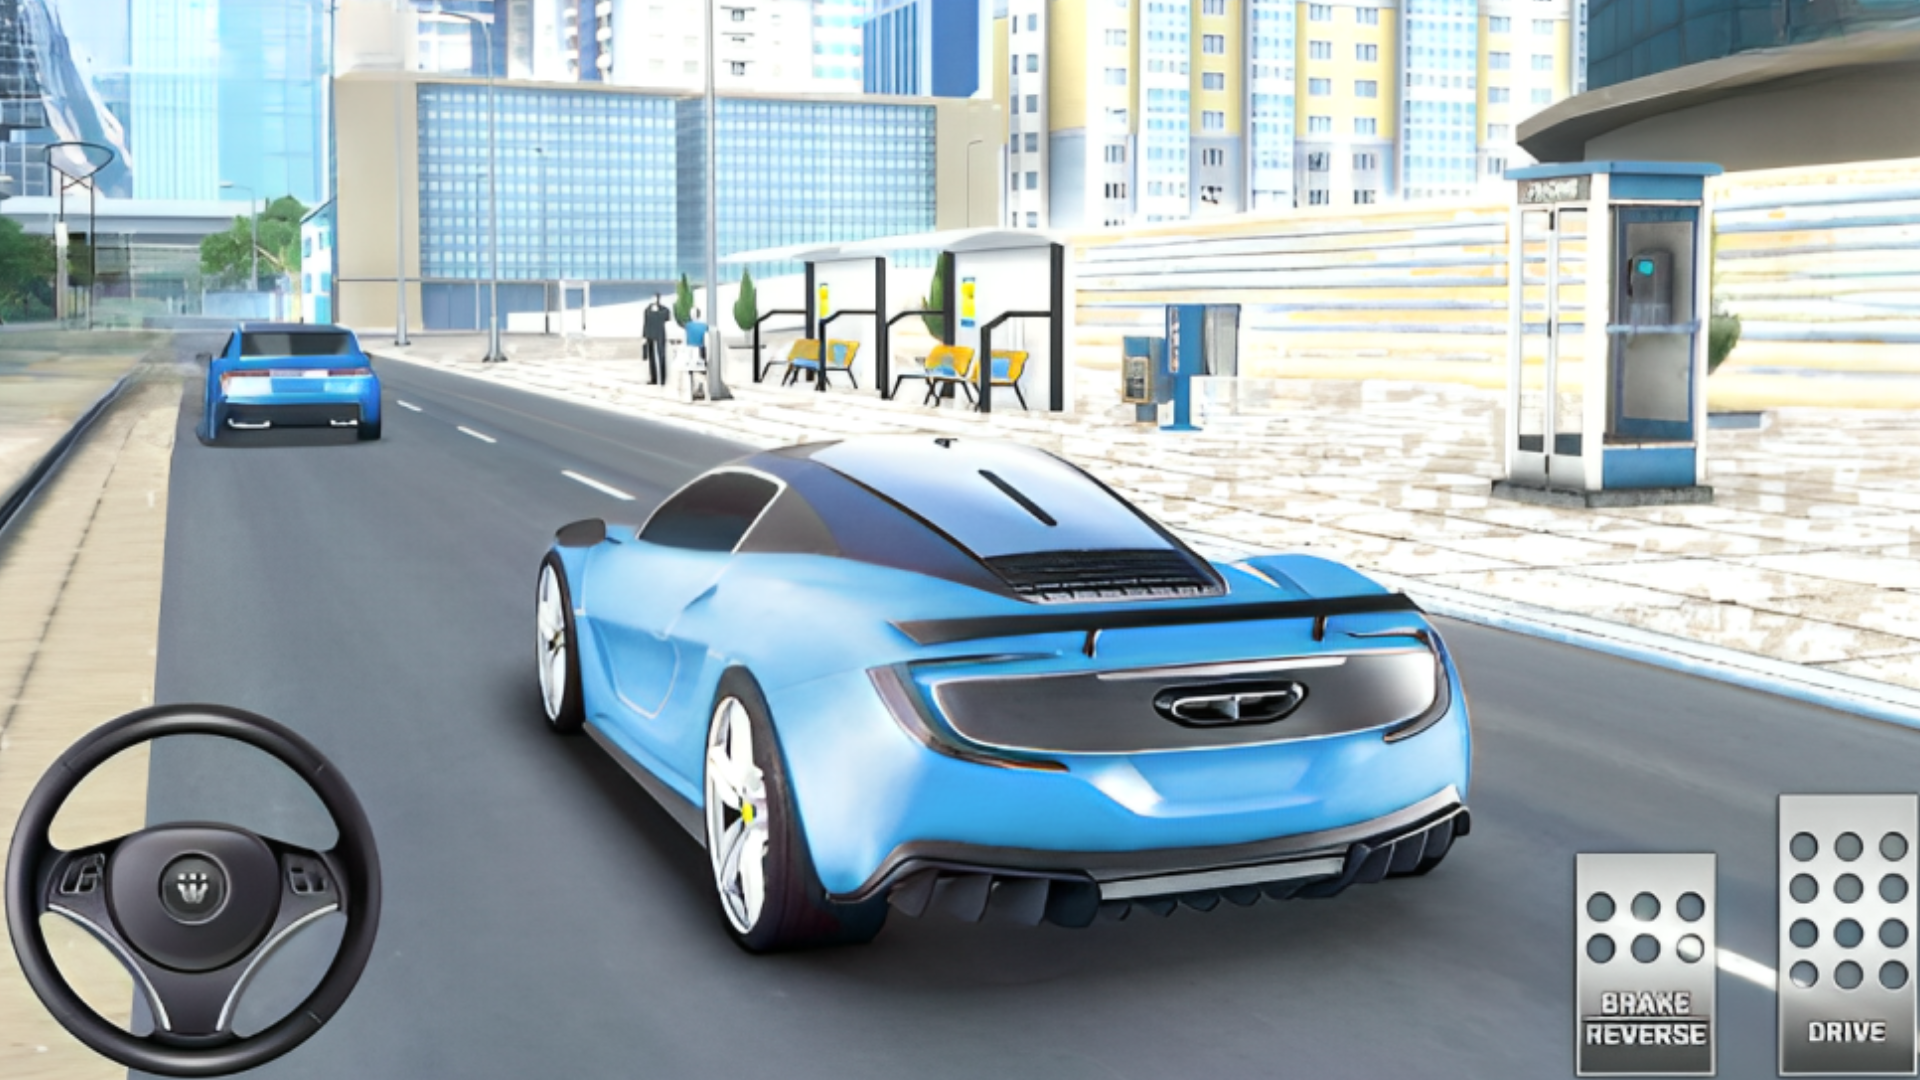 Extreme Car Driving Racing 3D MOD APK - TapTap